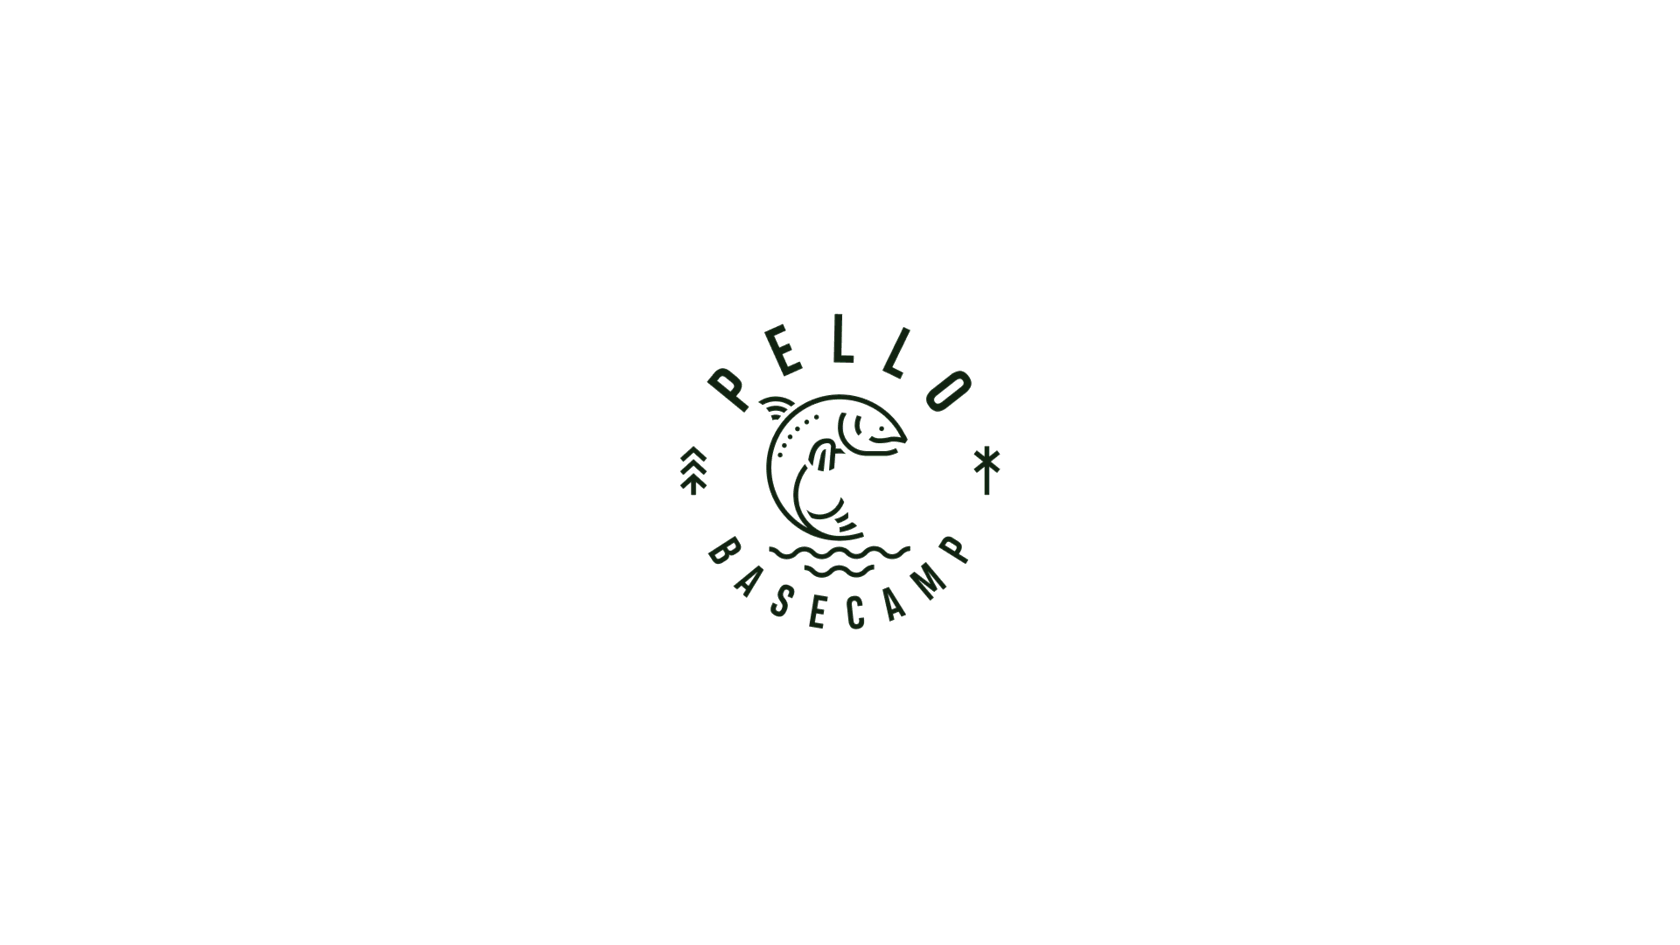 Pello Basecamp logo design new concept